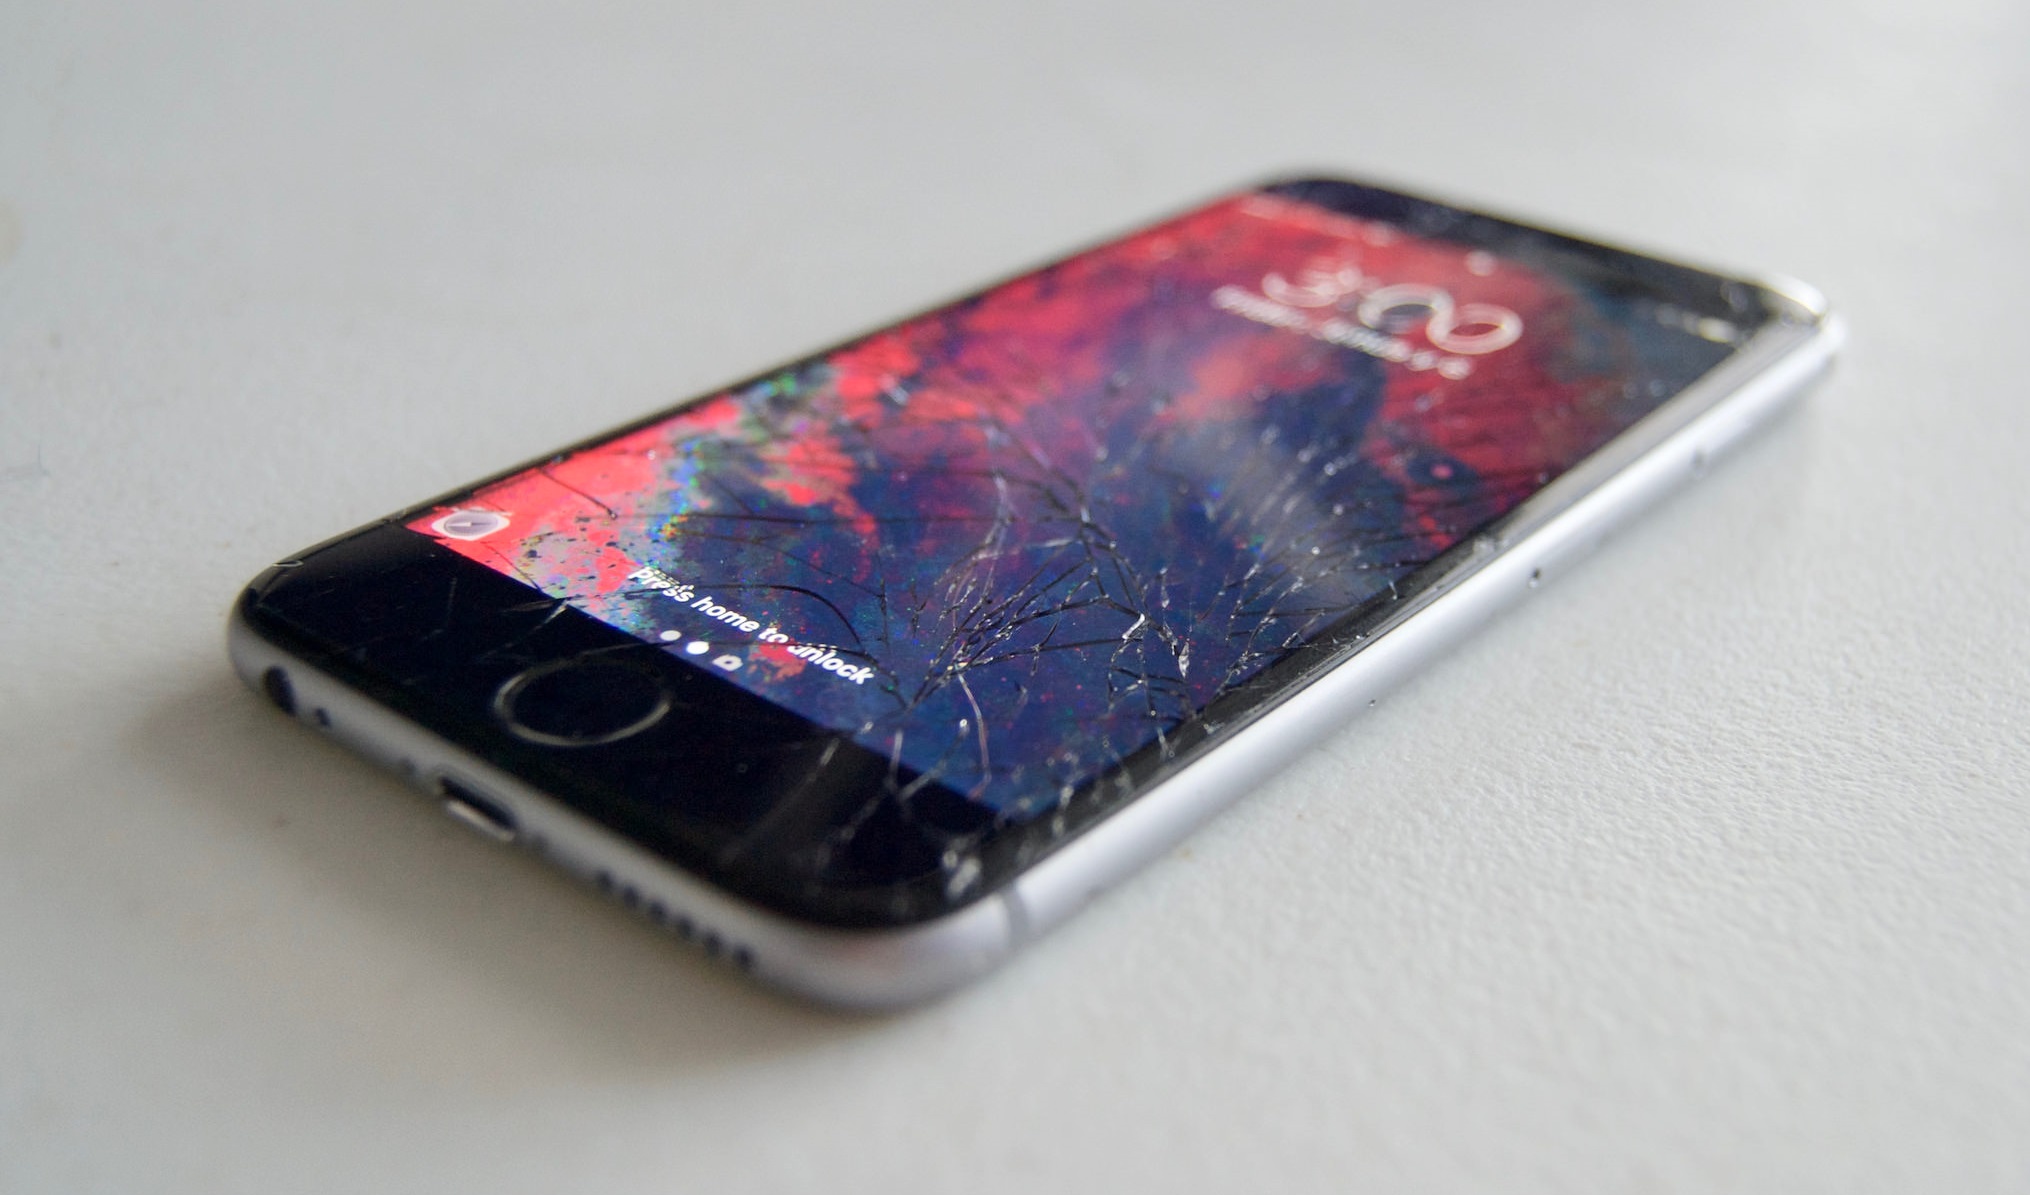 Guia vazado mostra como Apple decide se conserta ou troca iPhones